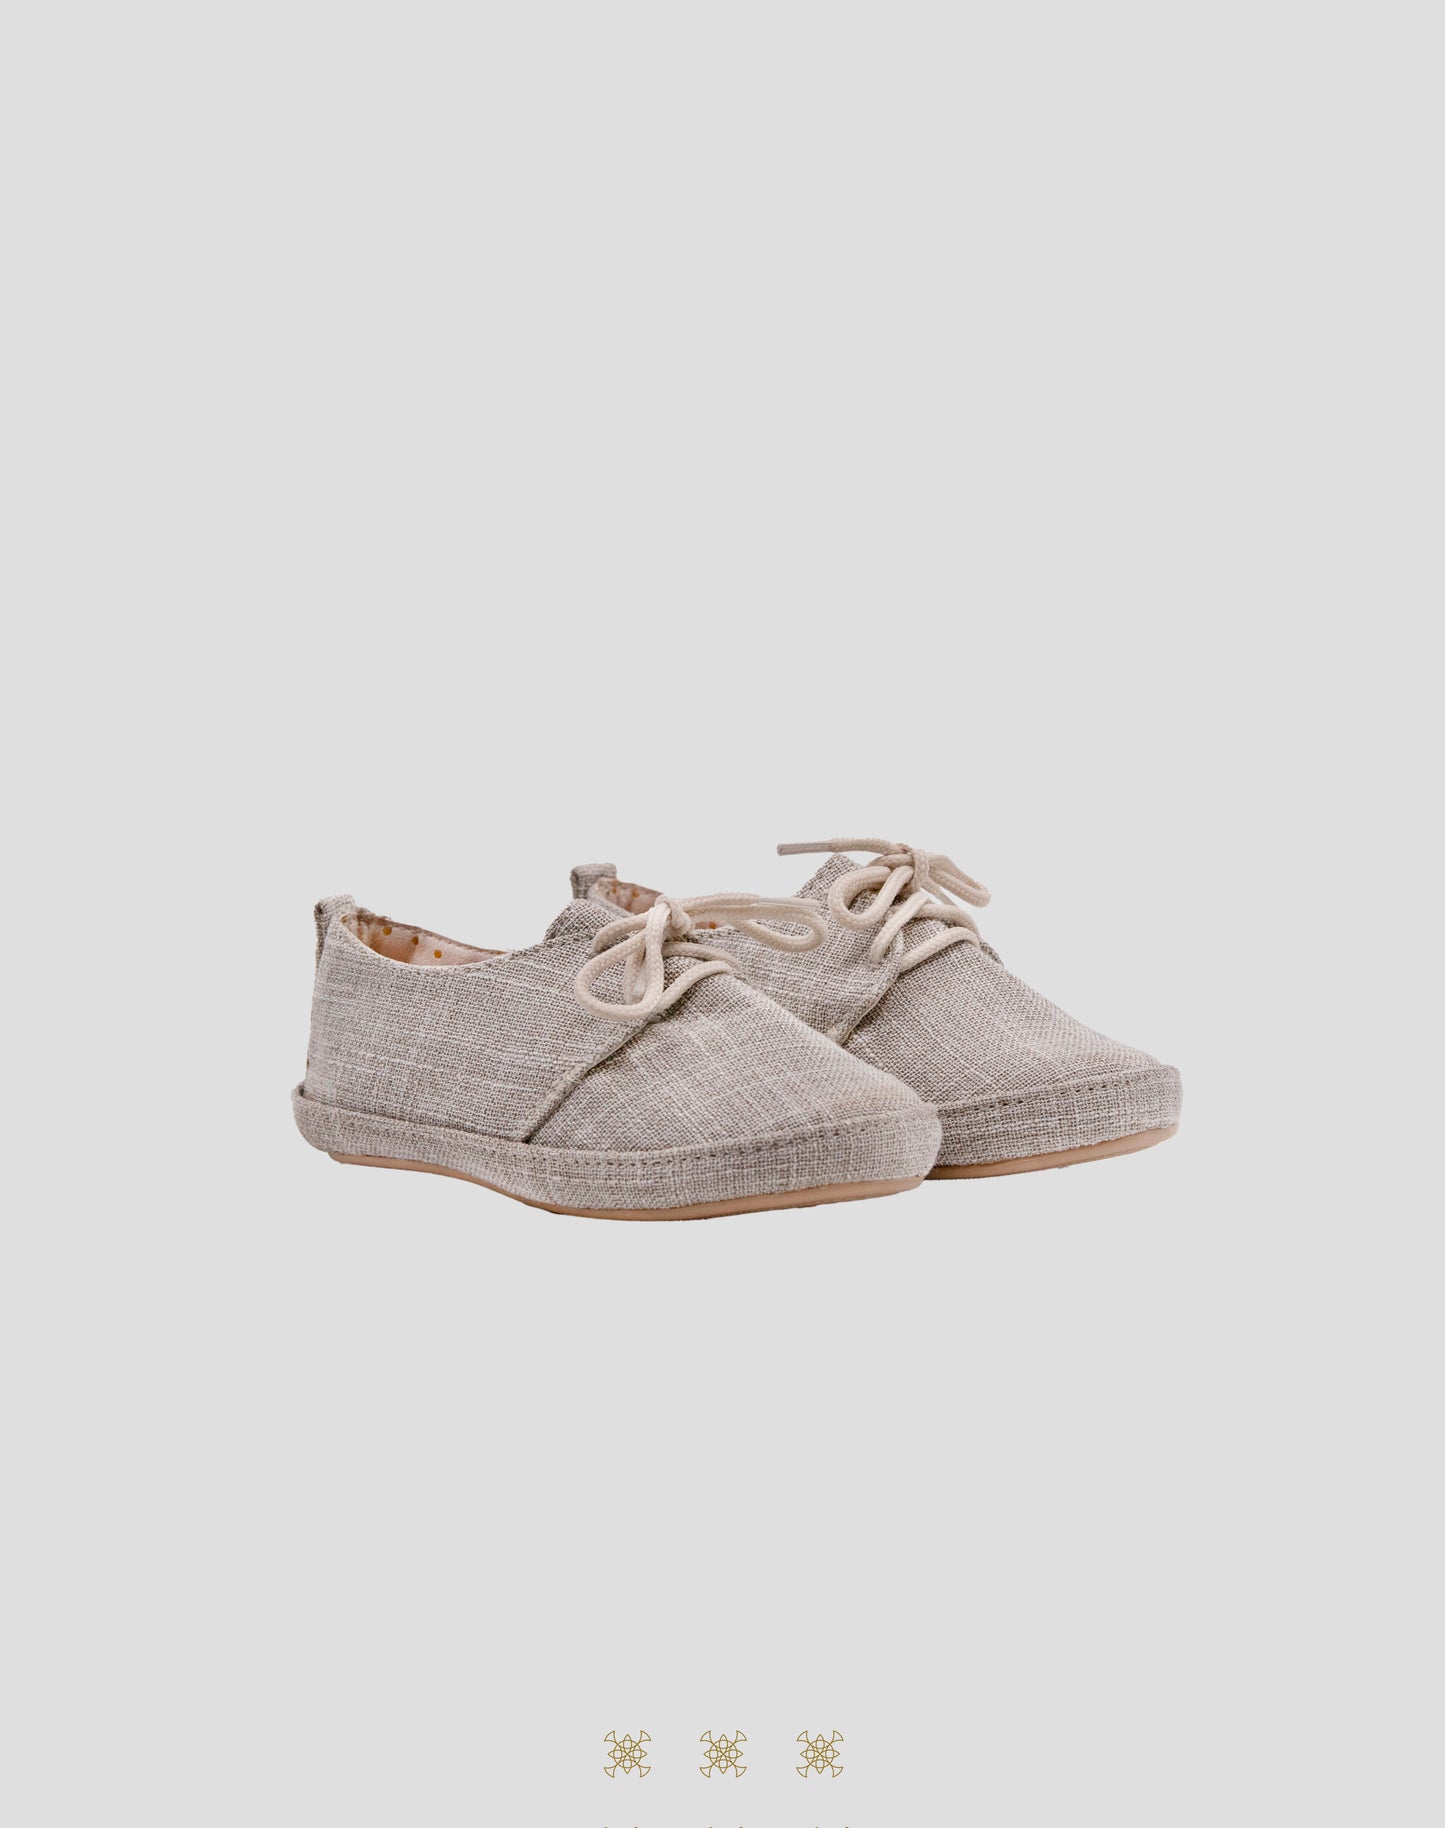 Zapato infantil gris 85-008